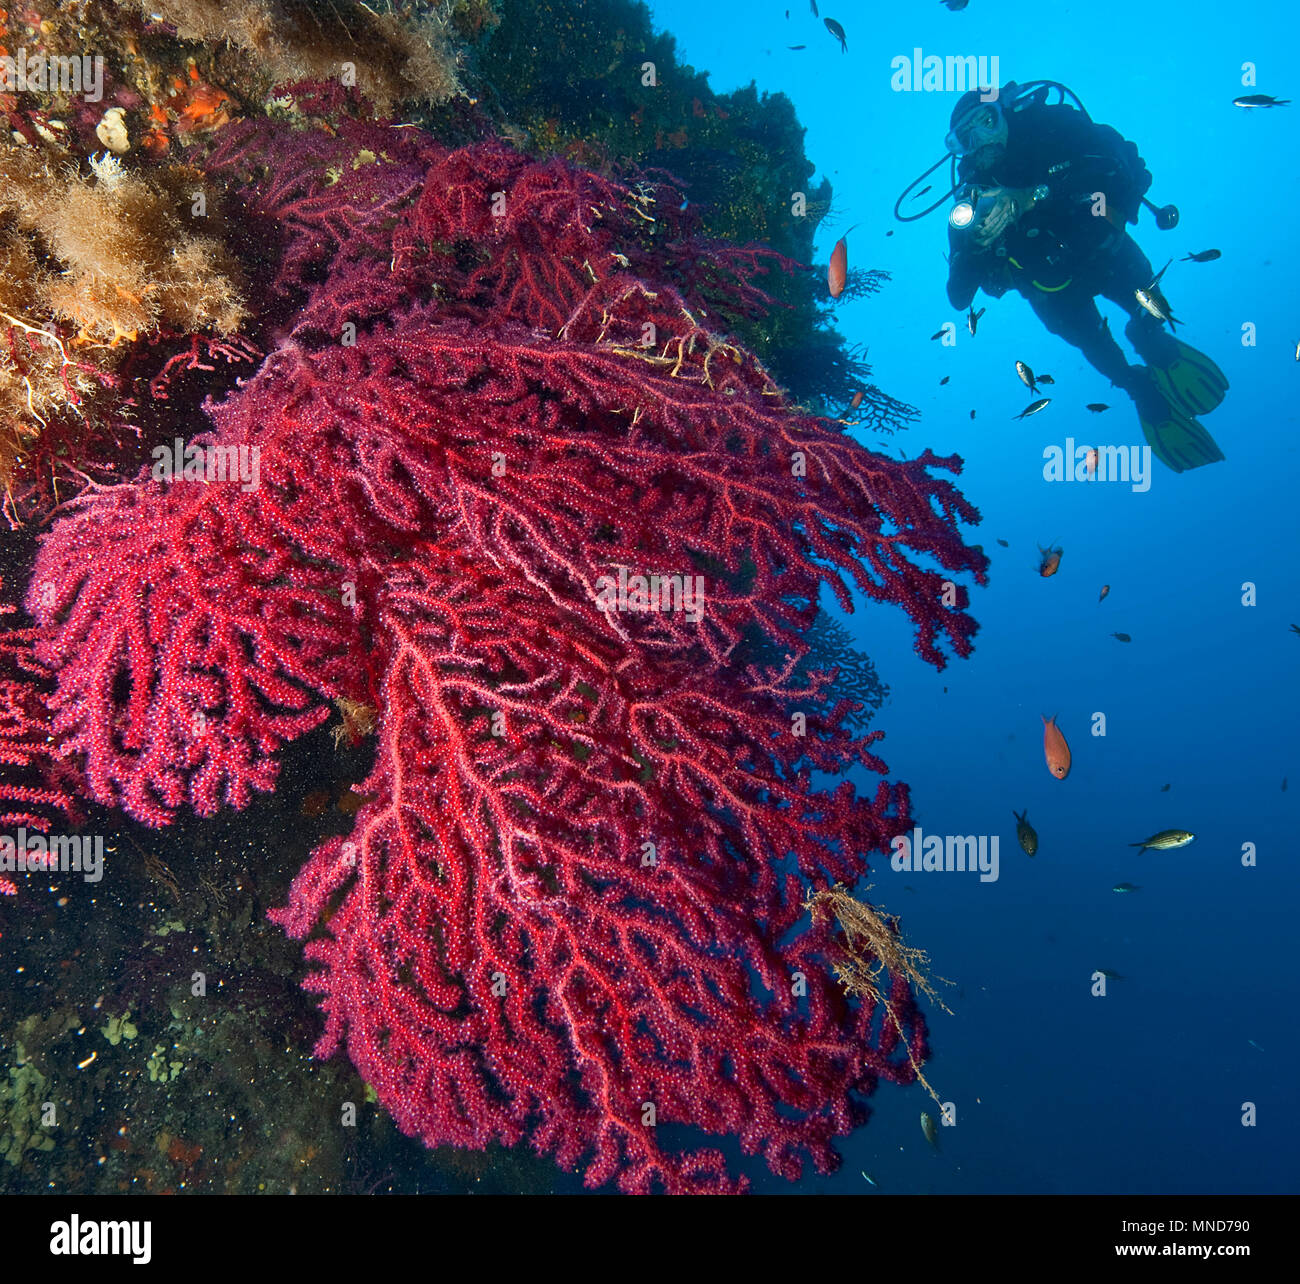 Taucher und rote fan Coral im Mittelmeer | Taucher und Rote Fächerkoralle im Mittelmeer | (Paramunicea clavata) Stockfoto